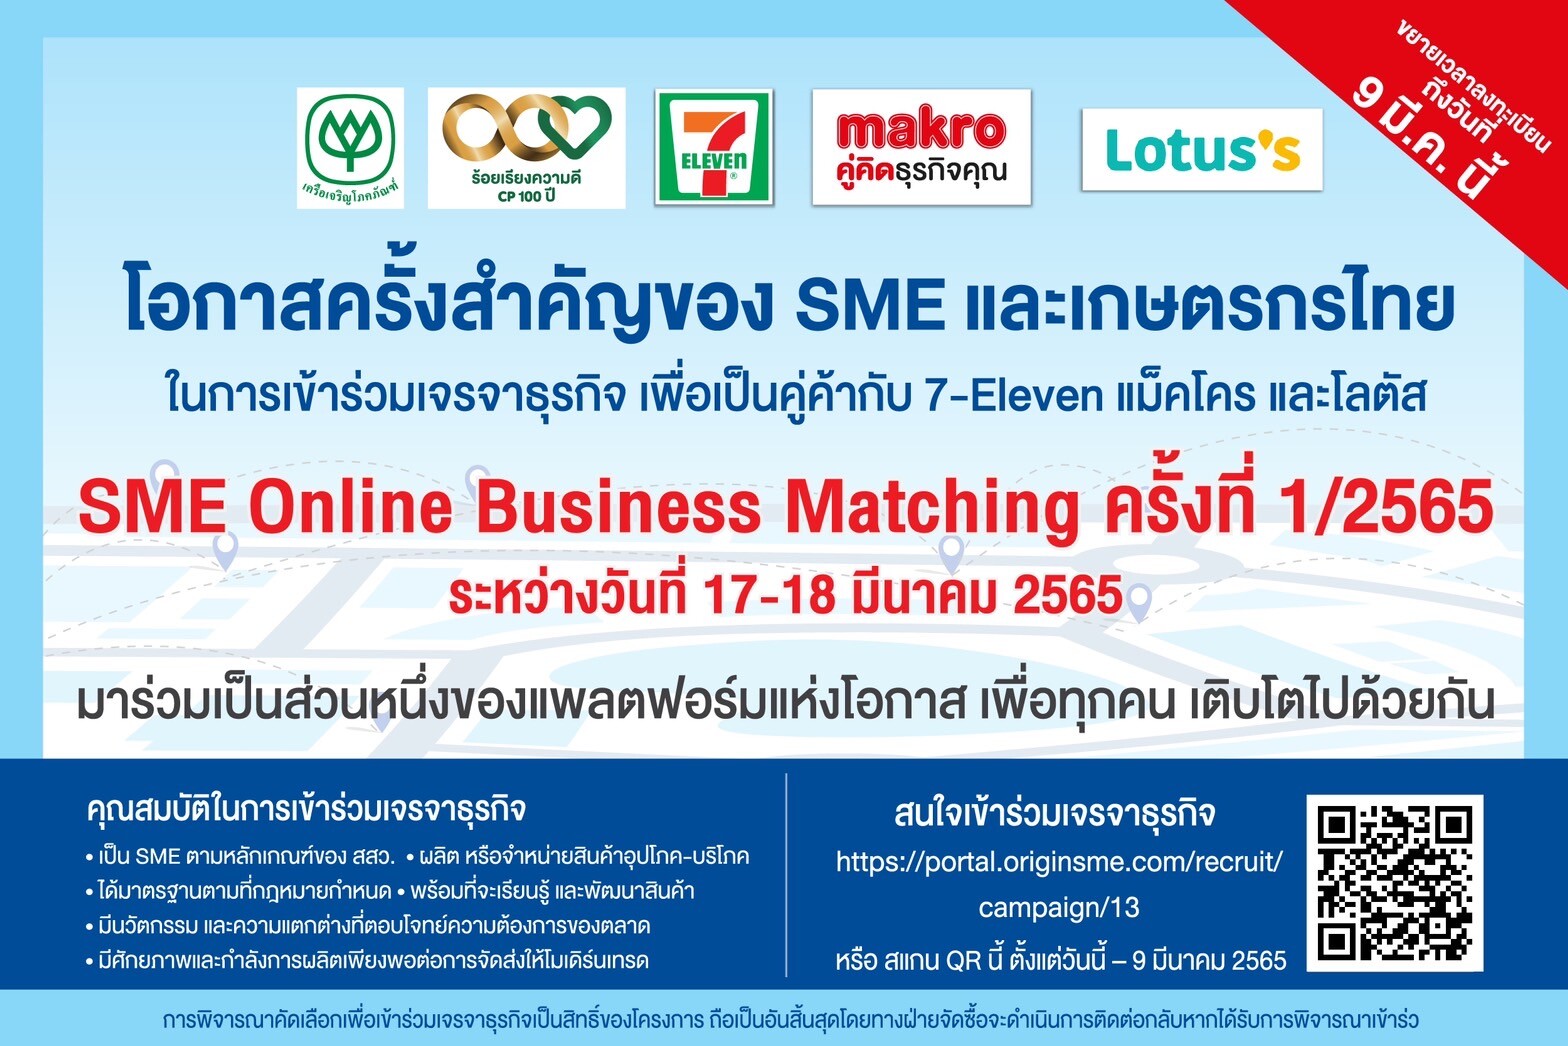 3 ค้าปลีกในเครือซีพี "เซเว่น อีเลฟเว่น - แม็คโคร - โลตัส" ผนึกกำลังเปิดเวทีจับคู่ธุรกิจ SME Online Business Matching นำร่องก้าวแรก "แพลตฟอร์มแห่งโอกาส"